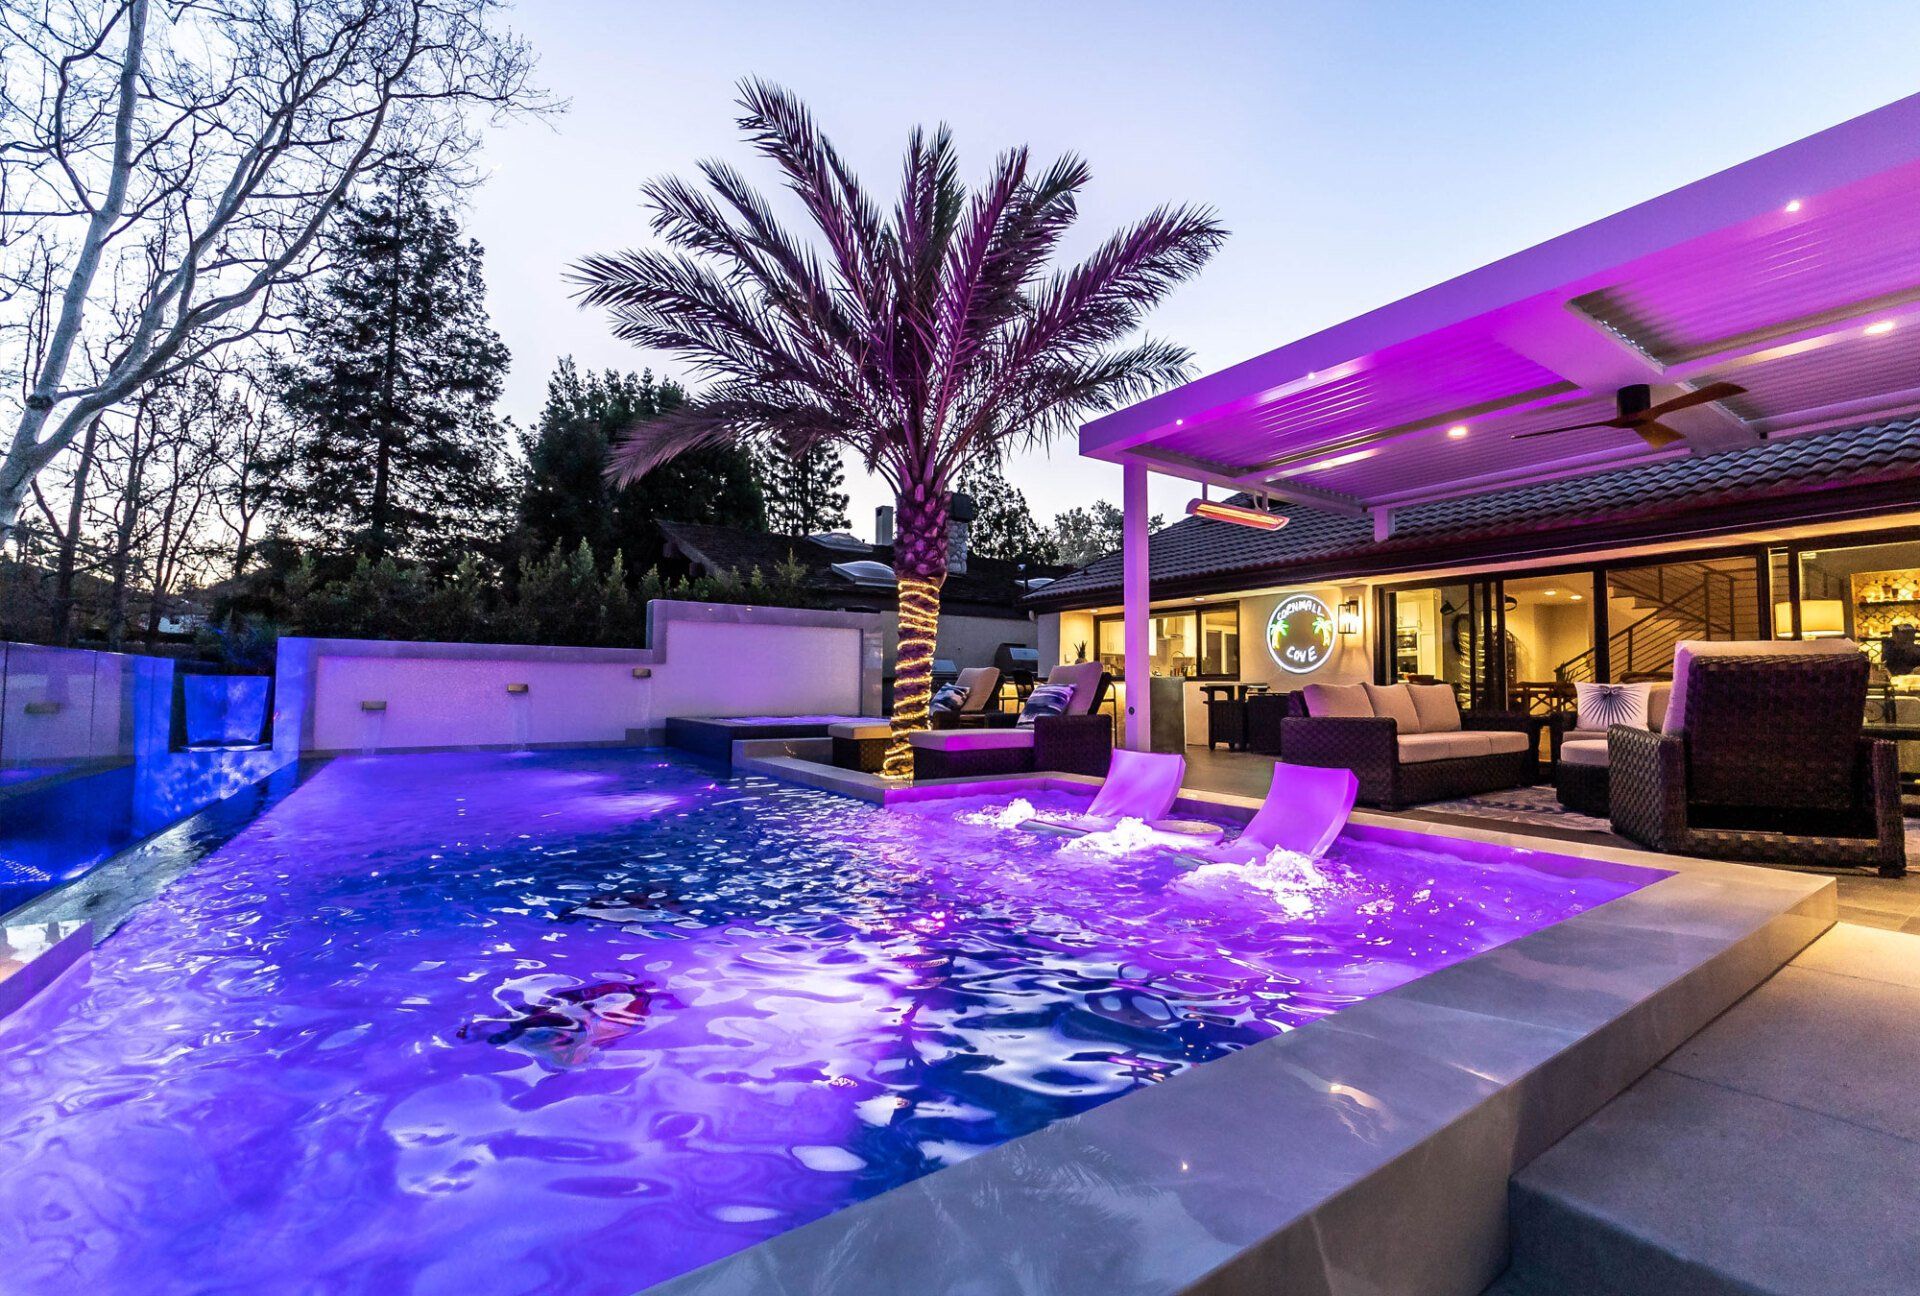 Luxury Swimming pool in Westlake Village, CA.